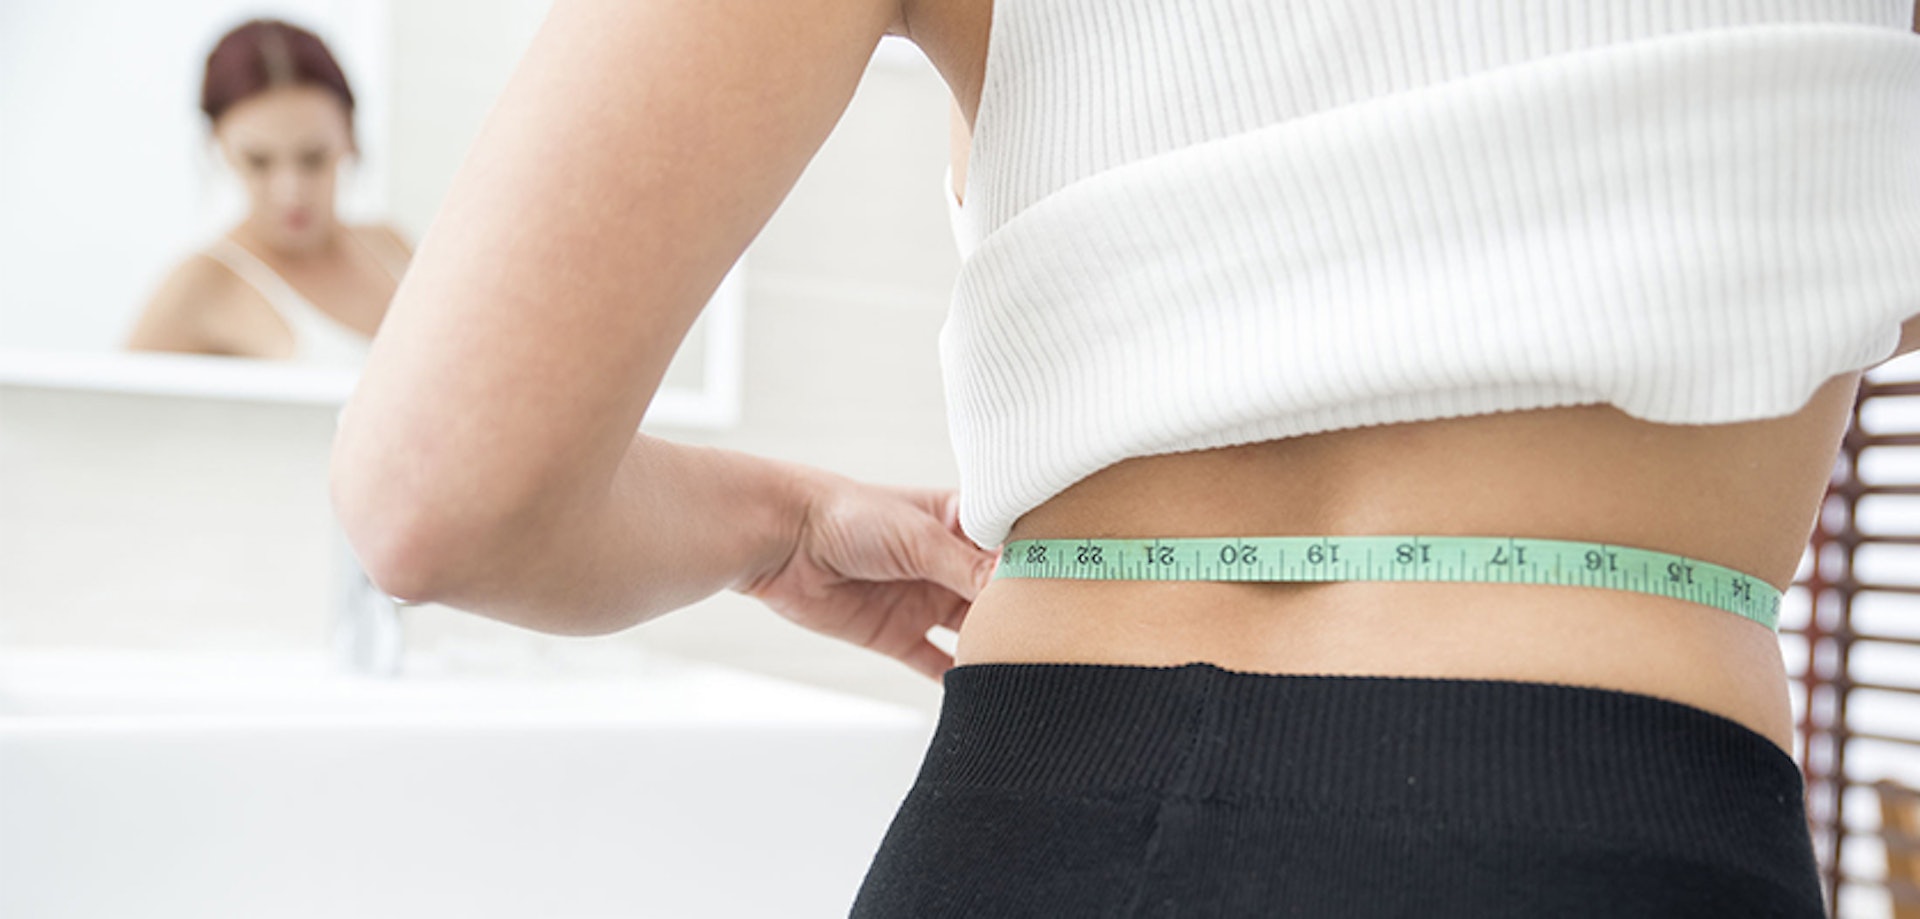 研究指出女性增胖5公斤的機會增加17%。（網上圖片）